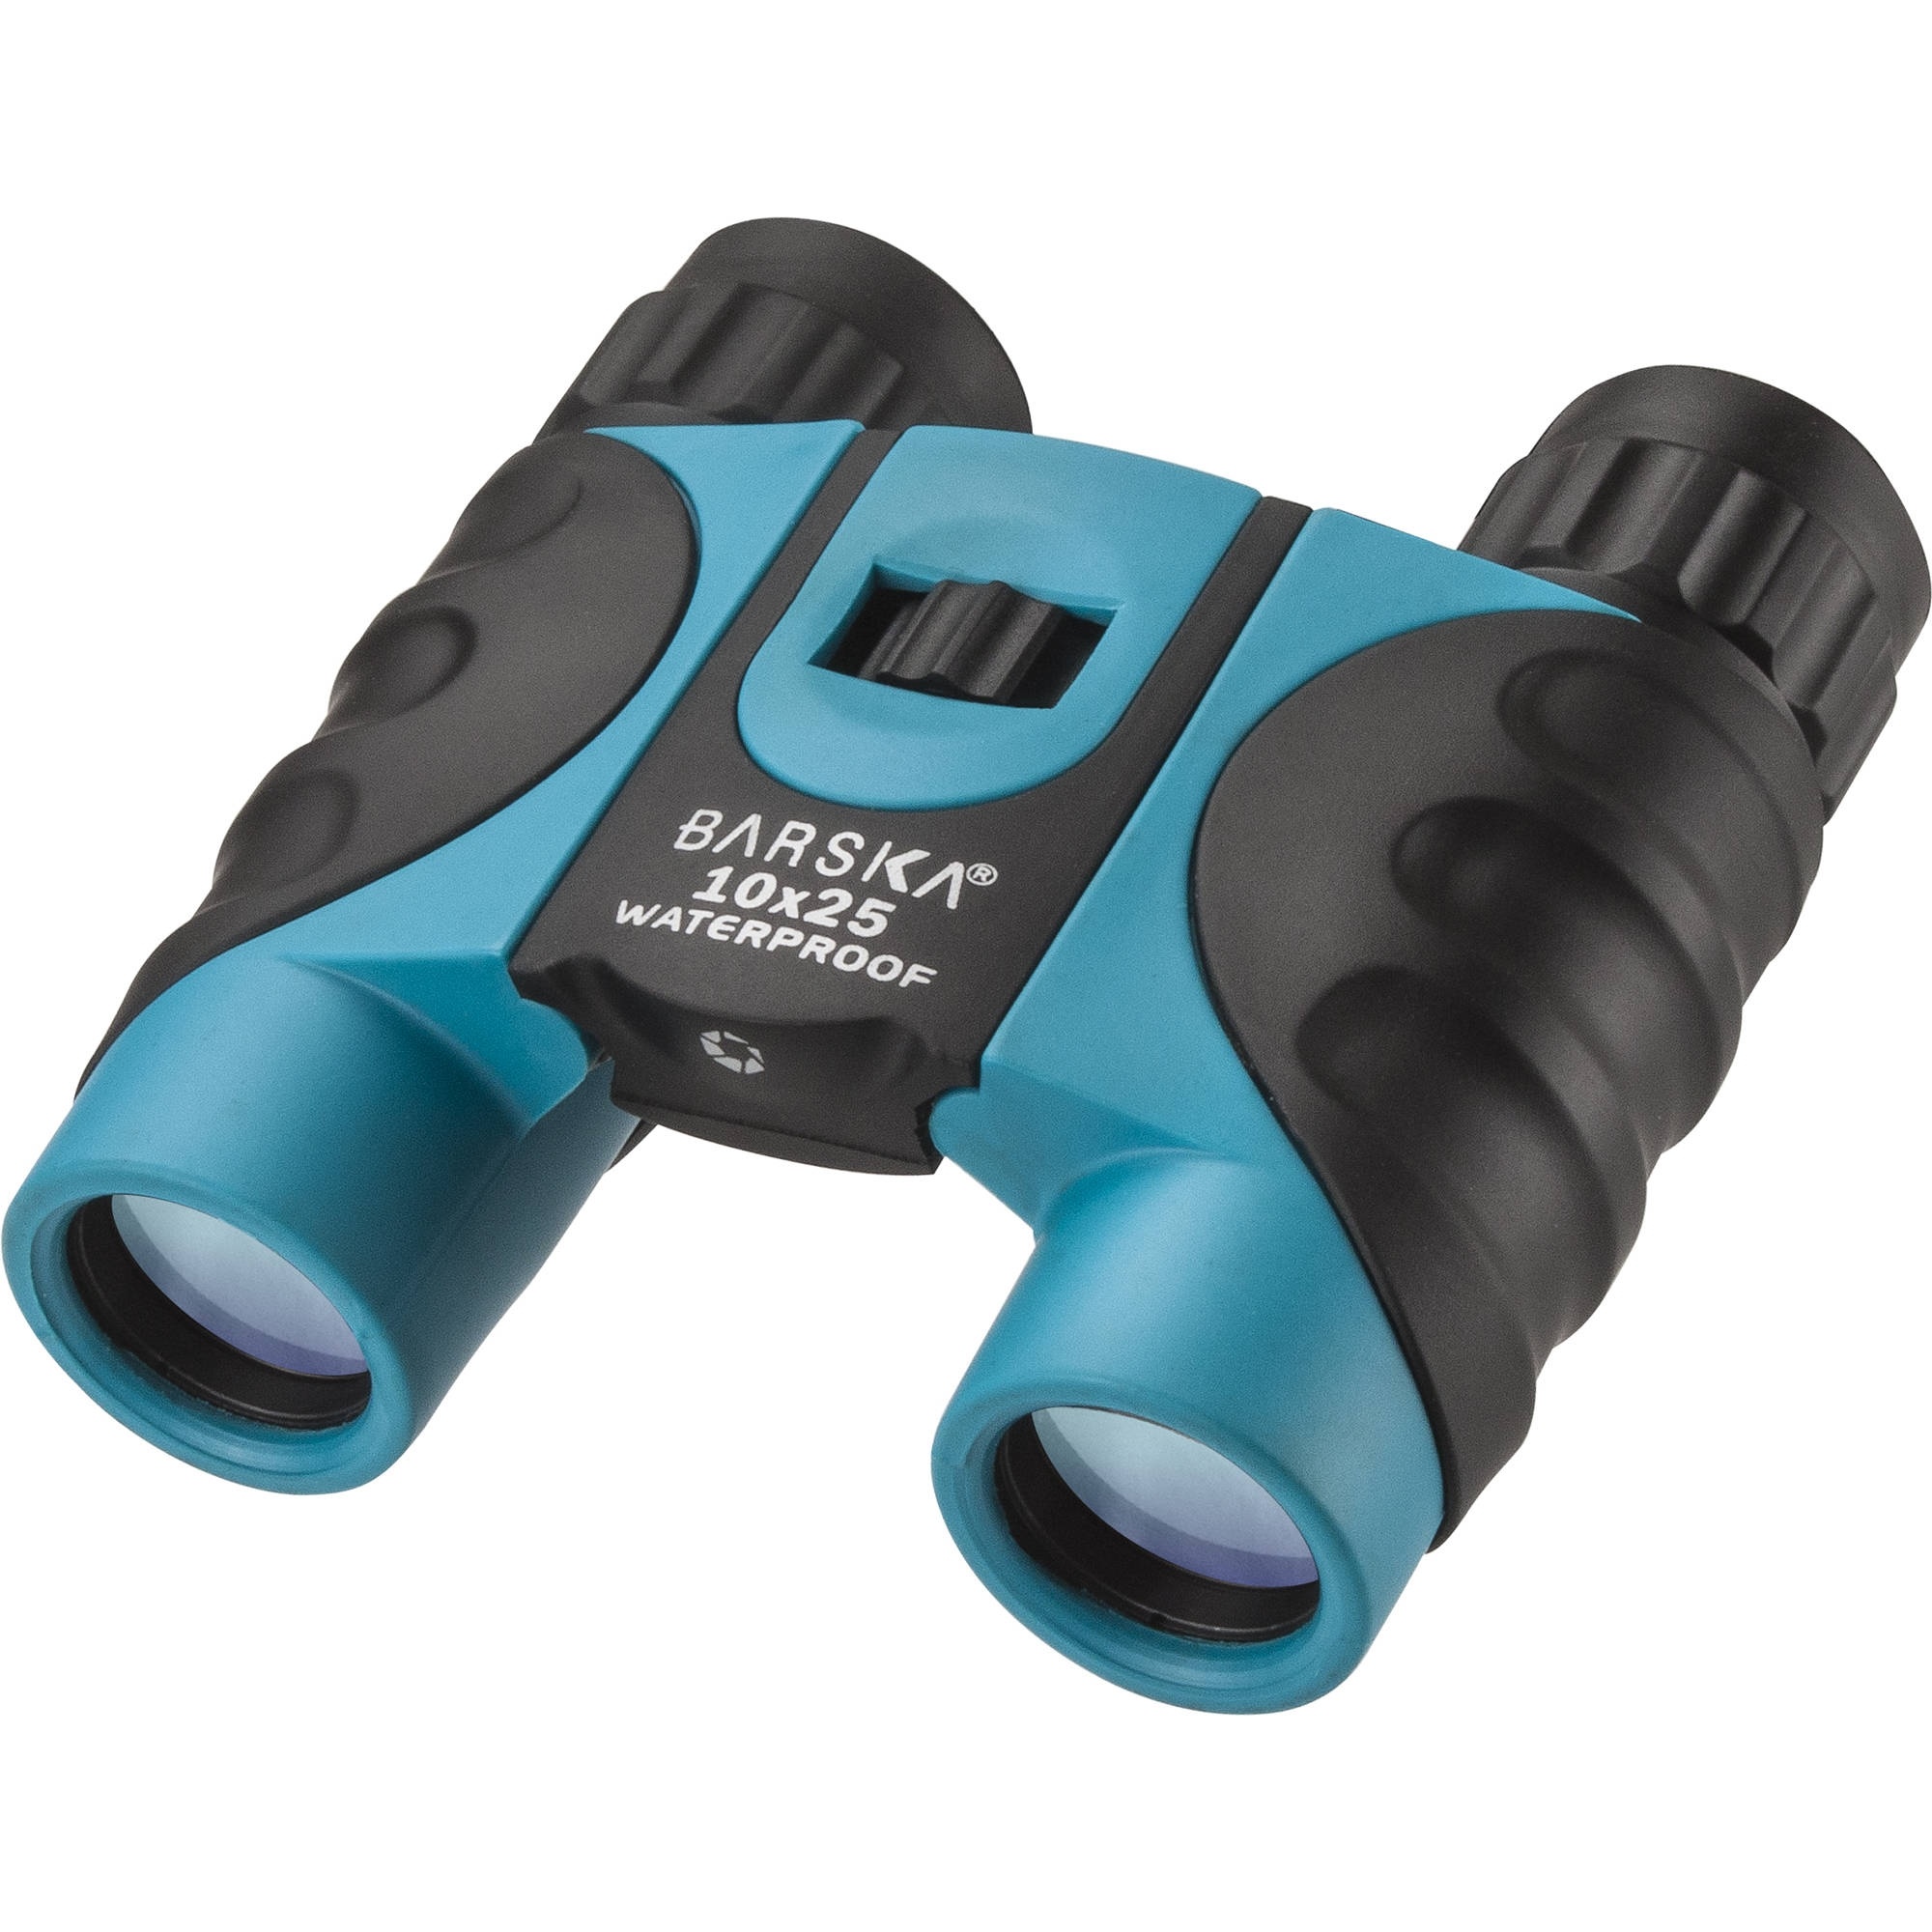 Barska 10x25 Colorado Waterproof Binoculars (Blue, Clamshell Packaging)